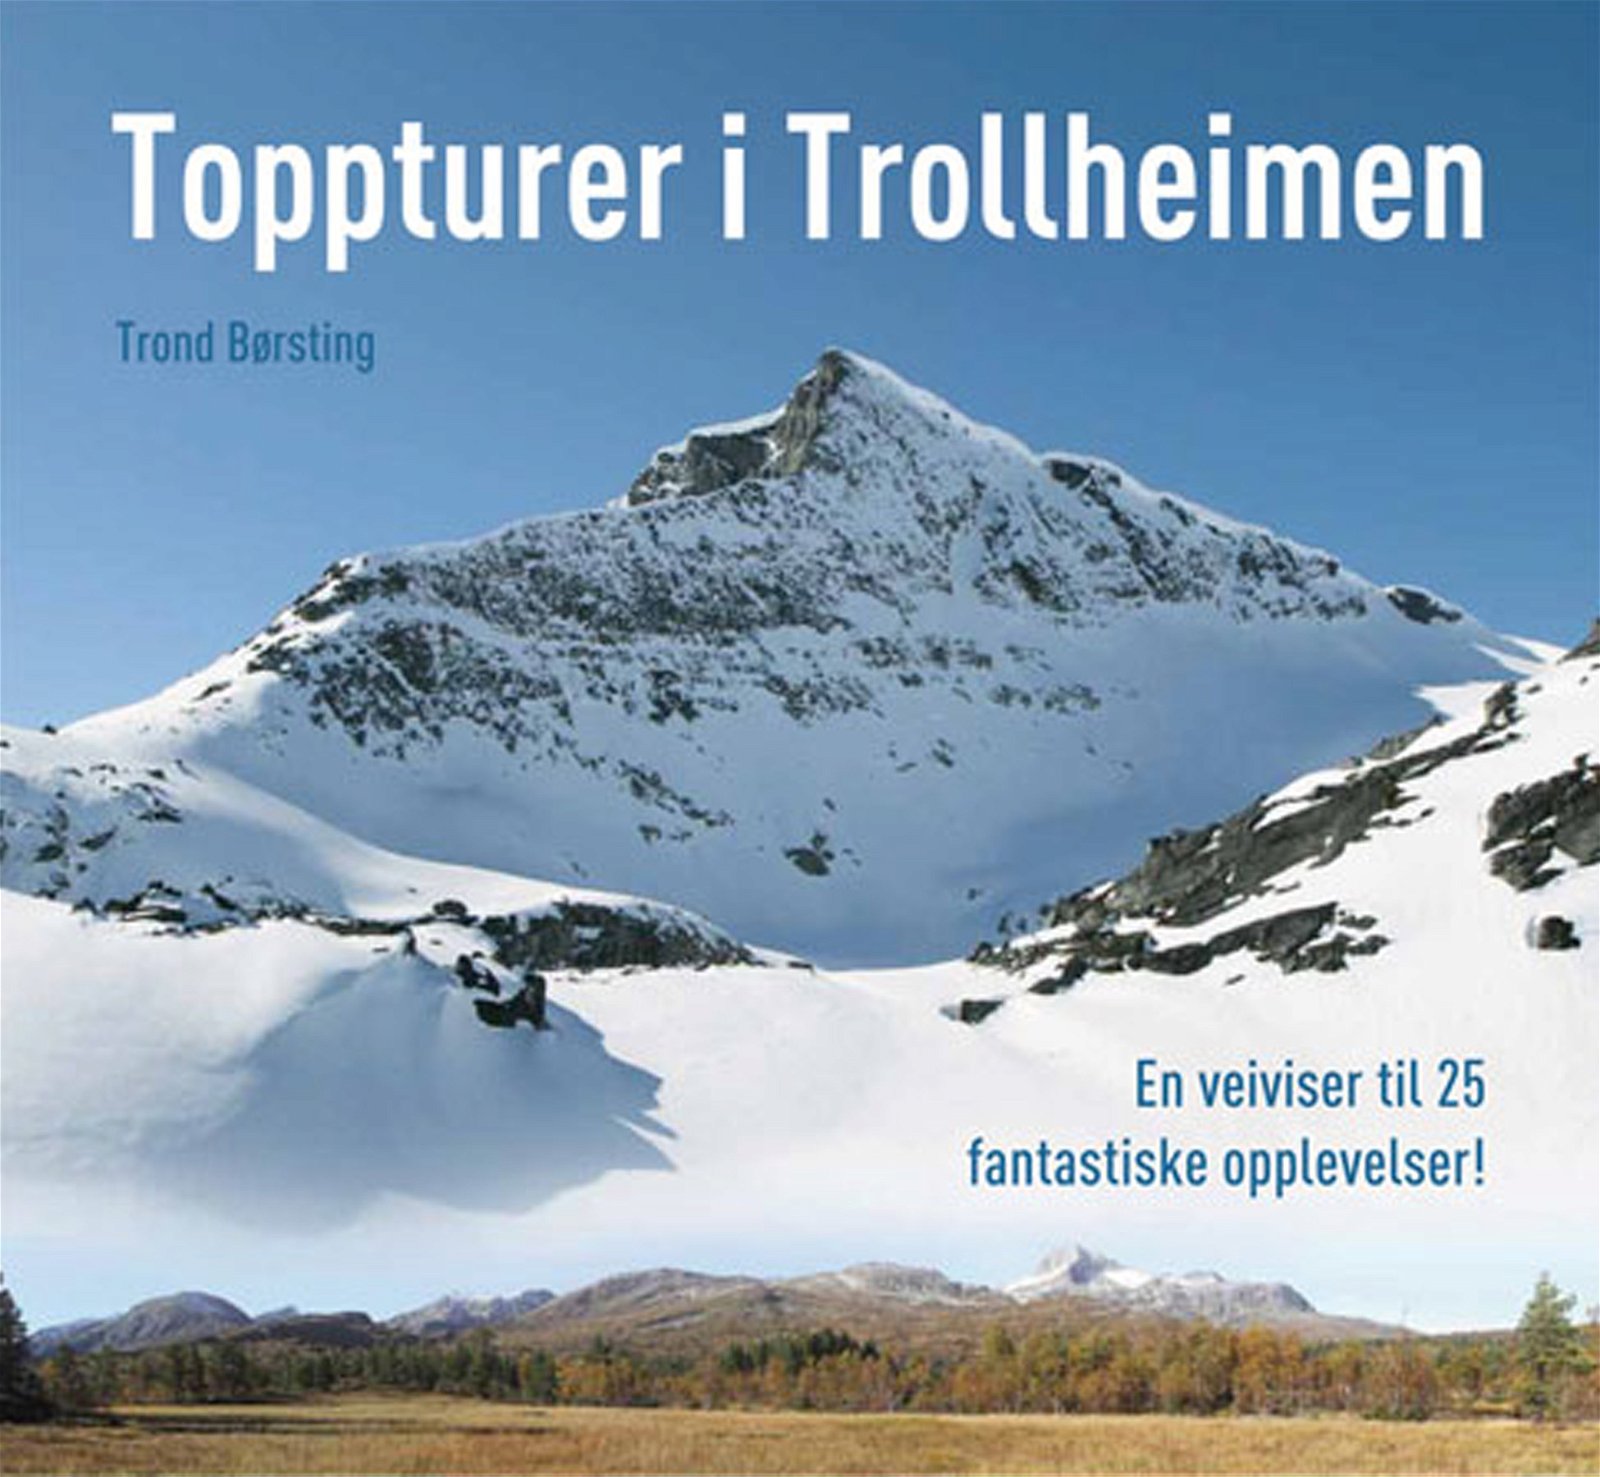 Toppturer i Trollheimen